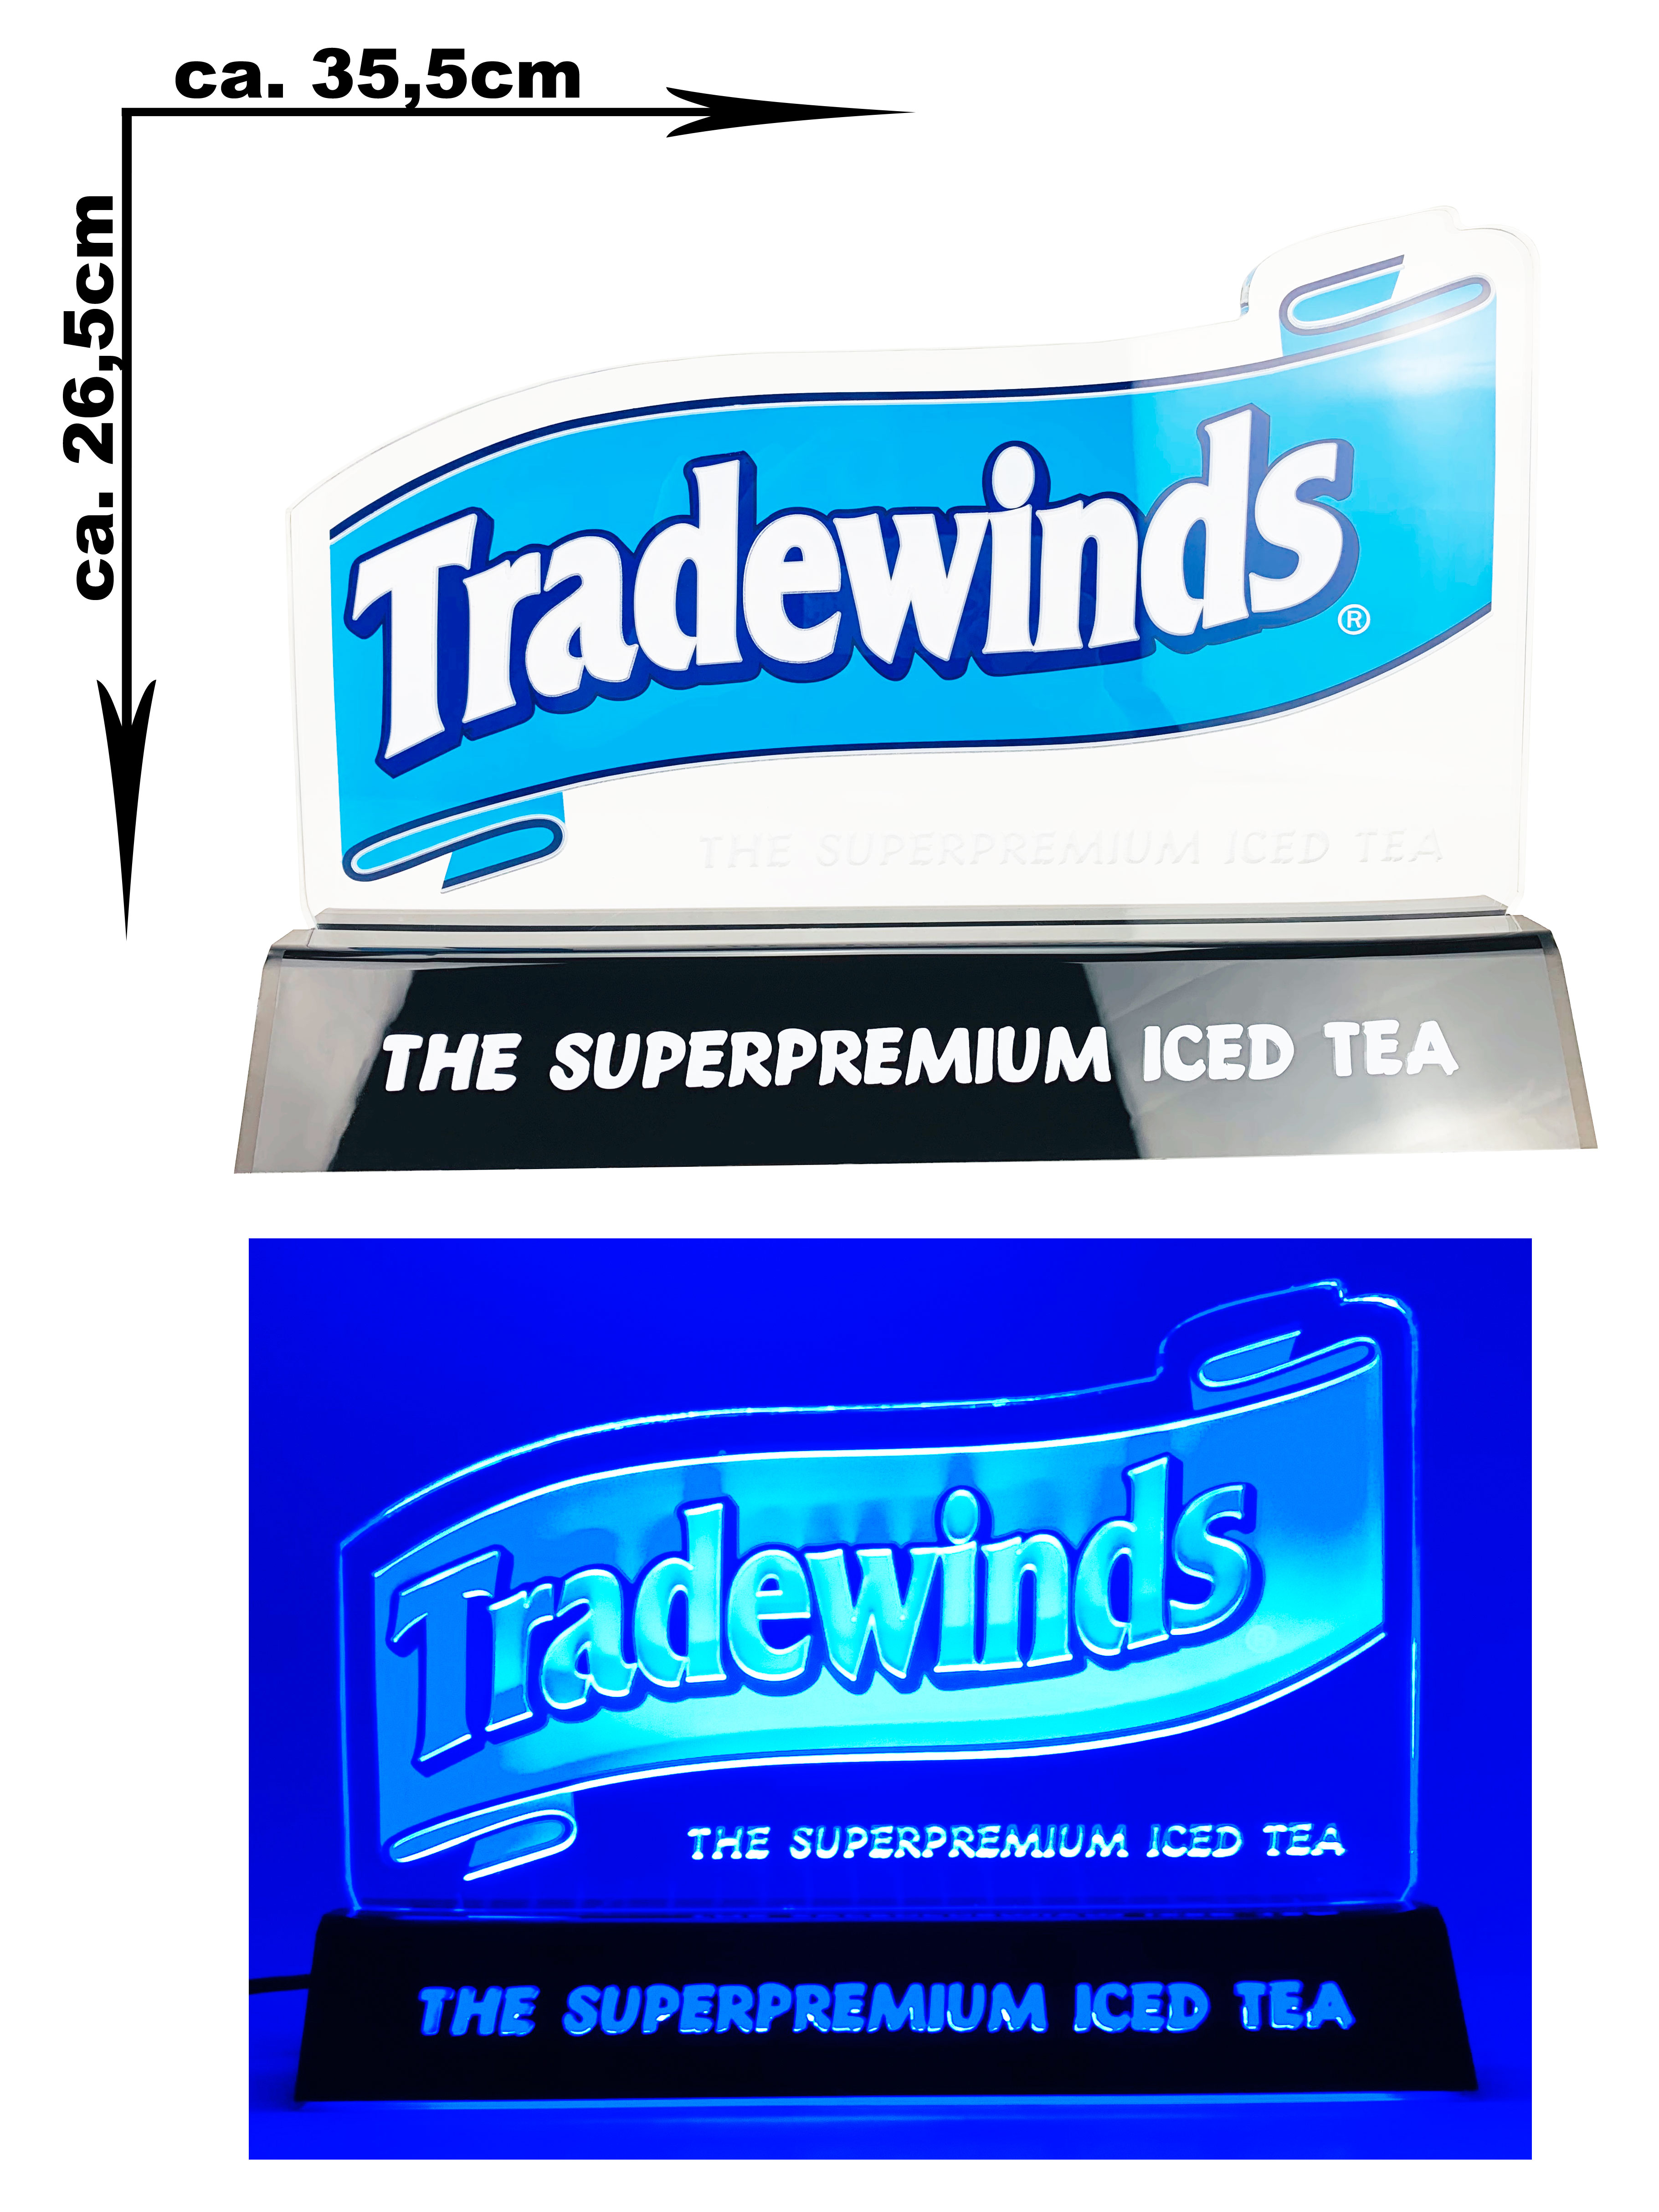 Tradewinds Ice Tee Leuchtschild Werbeschild Werbetafel Leuchtreklame LED Beleuchtet mit Netzteil - ca. 35,5 x 26,5cm